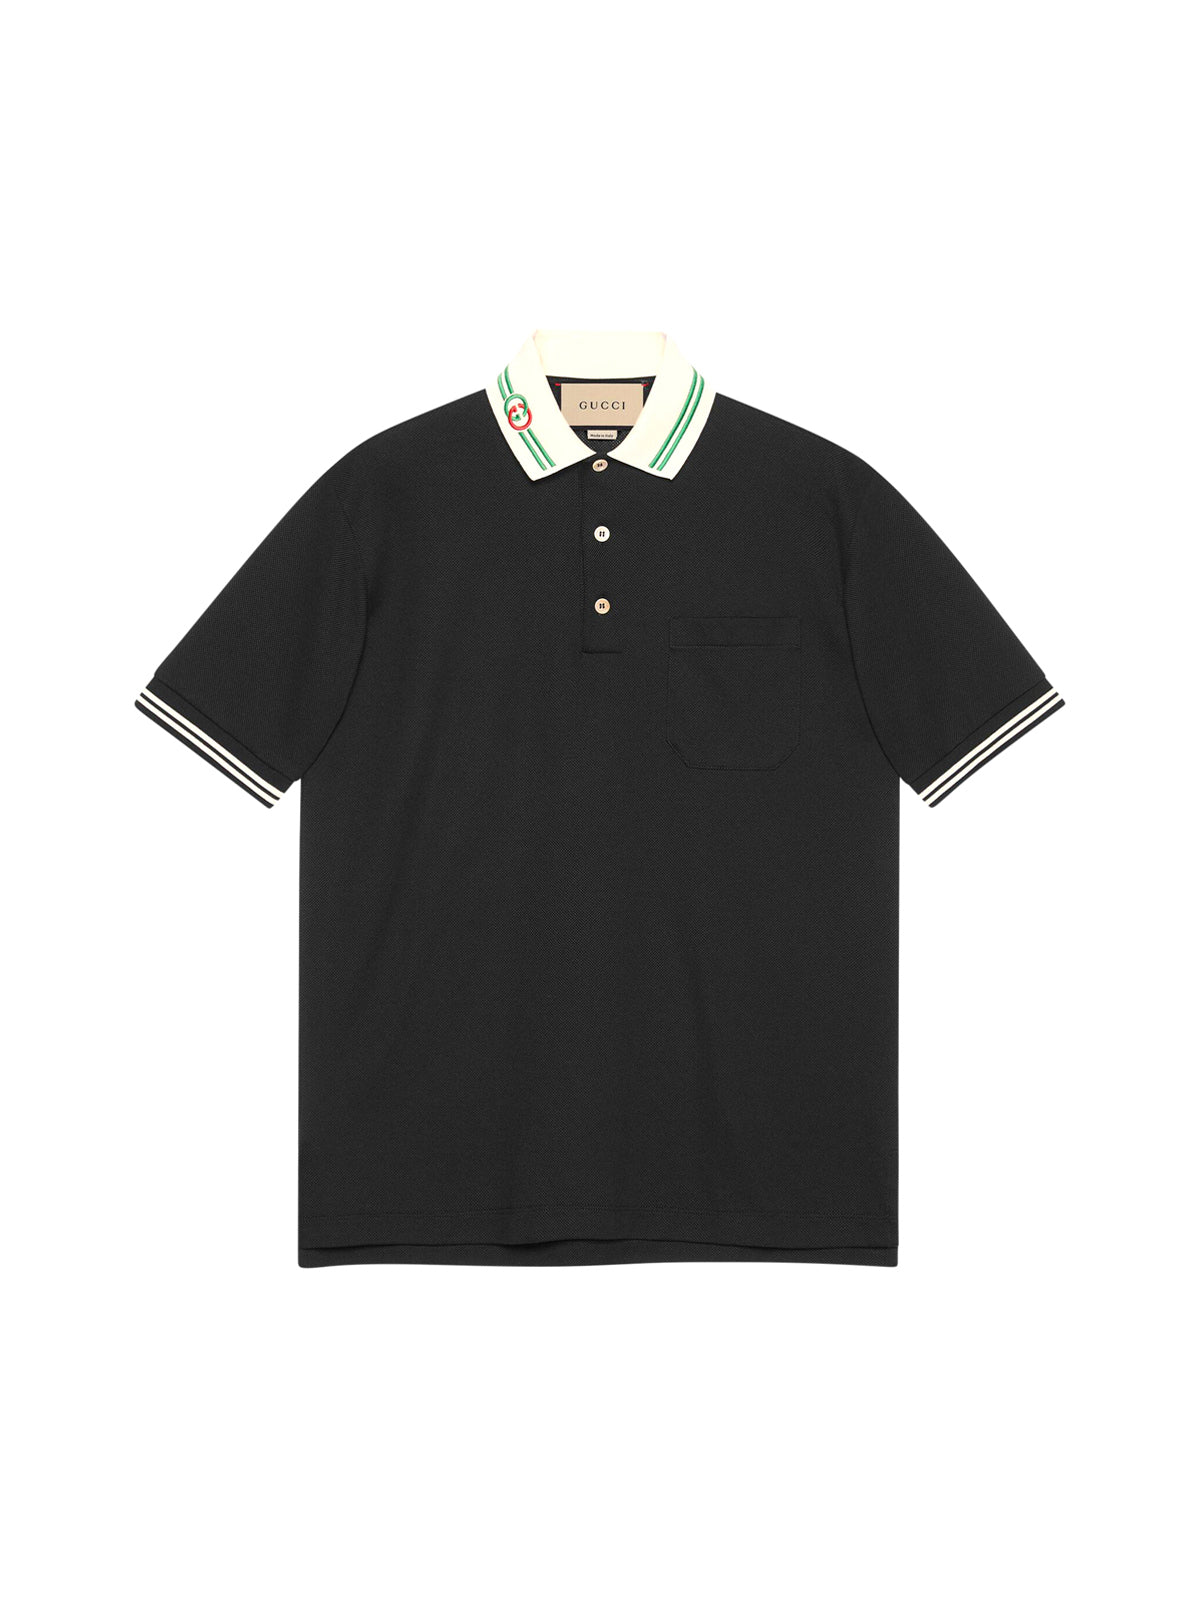 Cotton pique polo shirt with GG